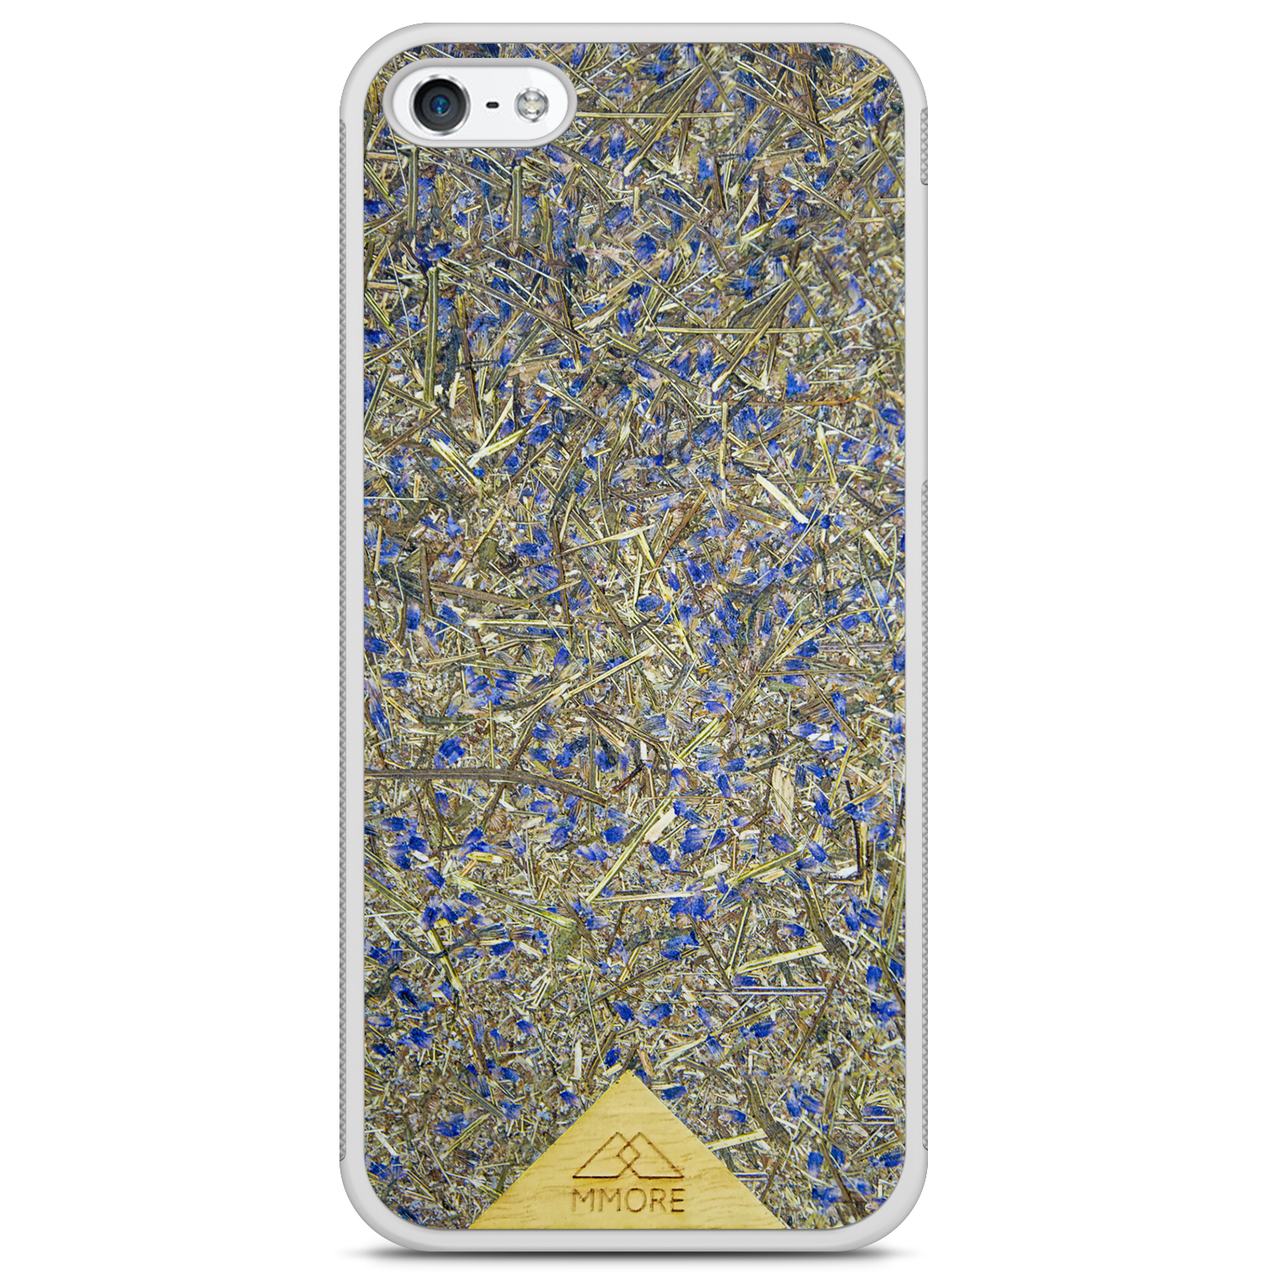 Чехол для телефона с белой рамкой и бледно-лиловым цветом для iPhone 5